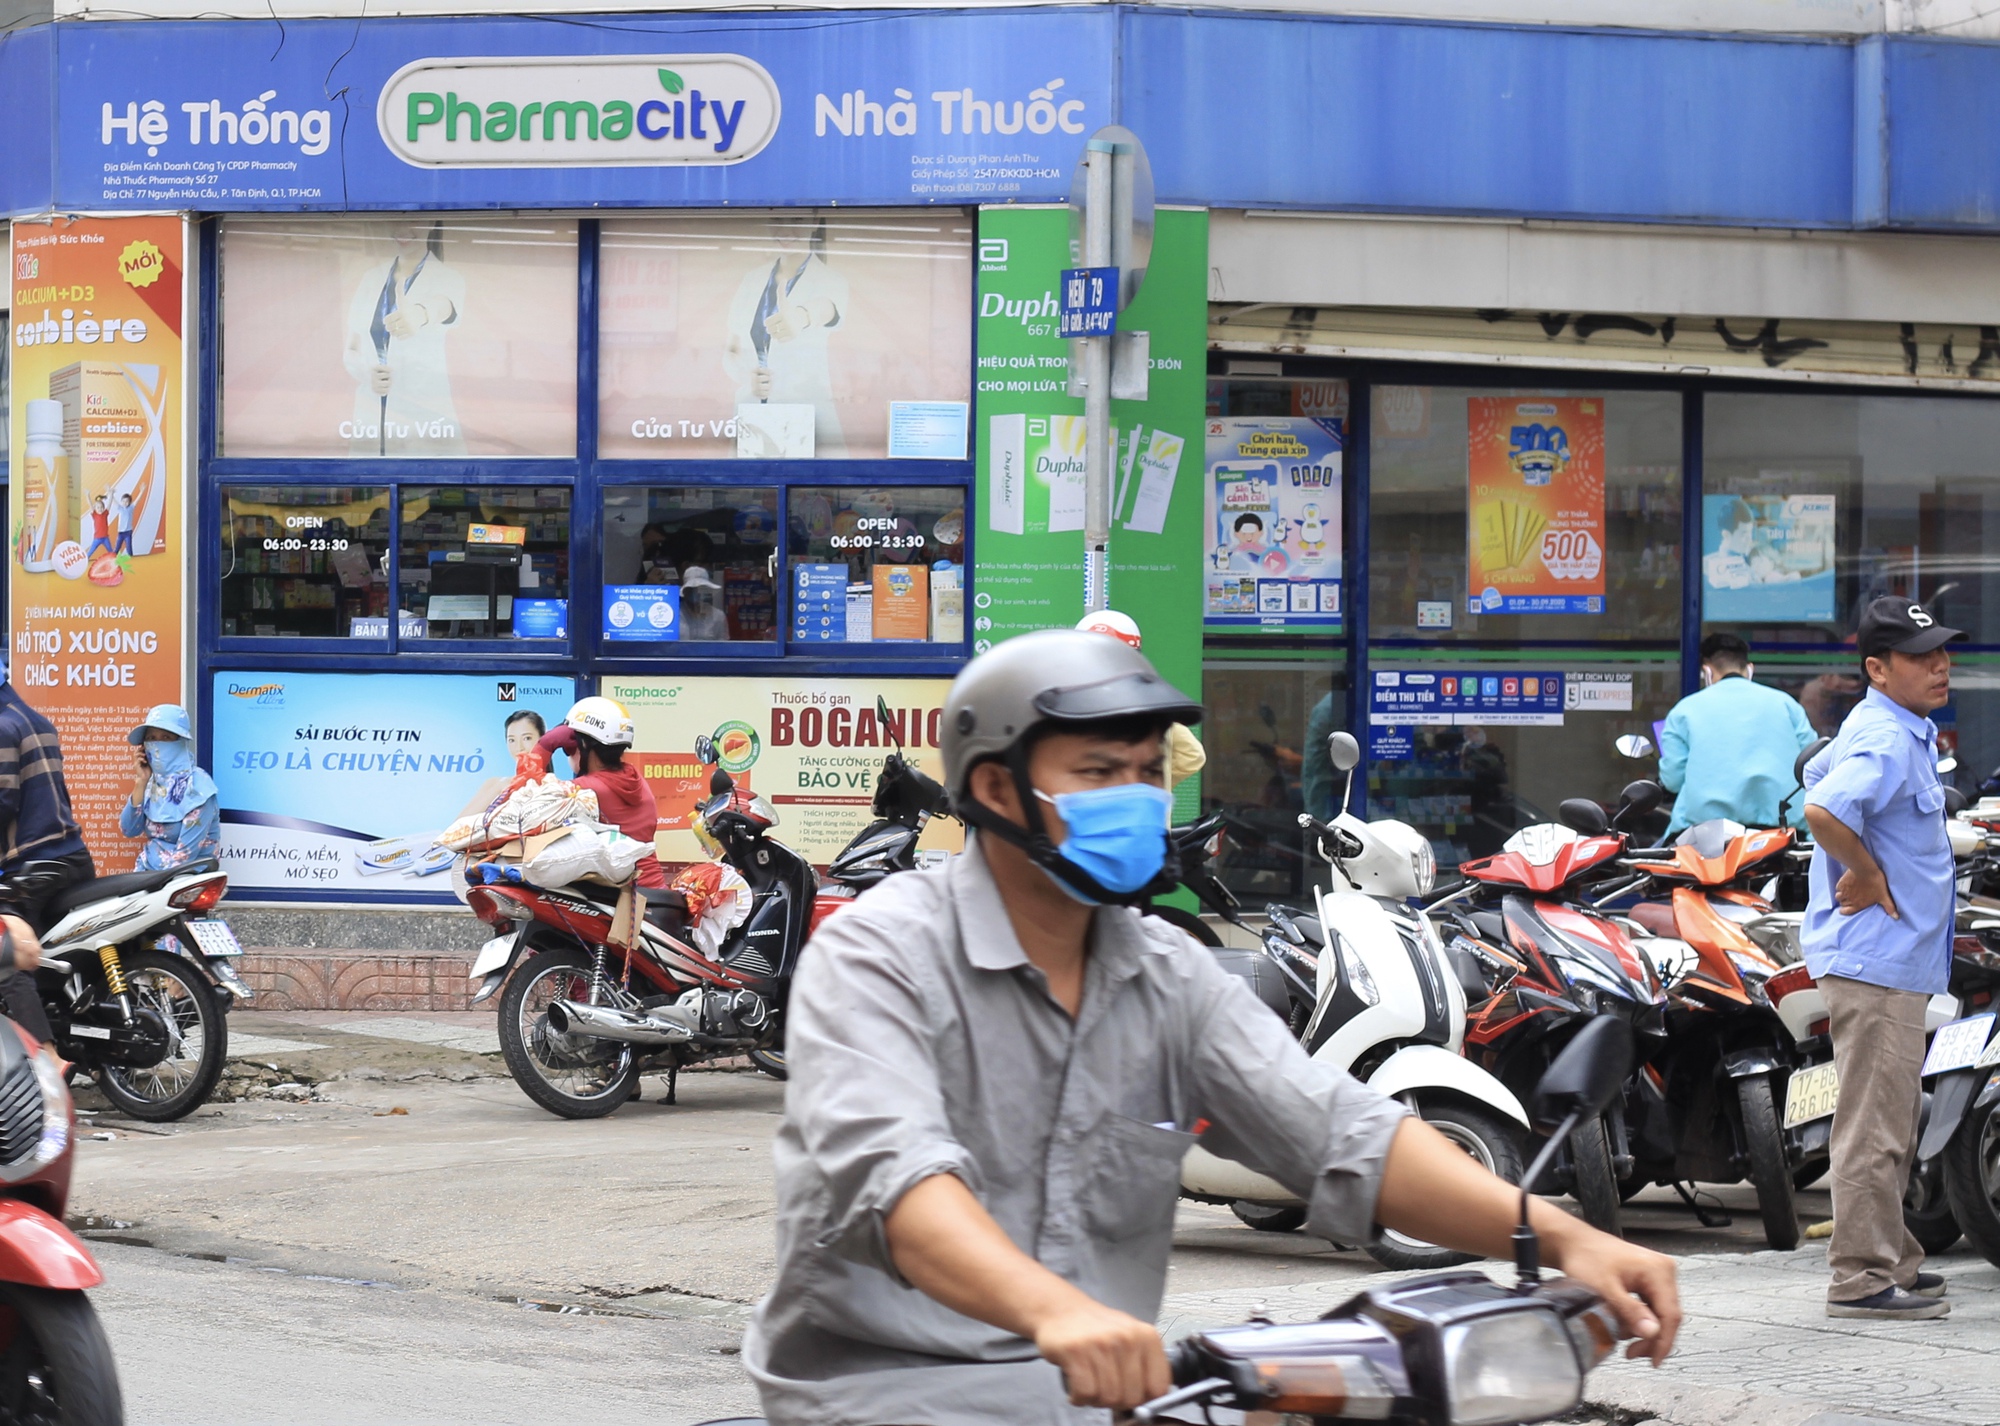 Cuộc đua khốc liệt chuỗi nhà thuốc: Long Châu, Pharmacity, An Khang đang kinh doanh ra sao? - Ảnh 2.